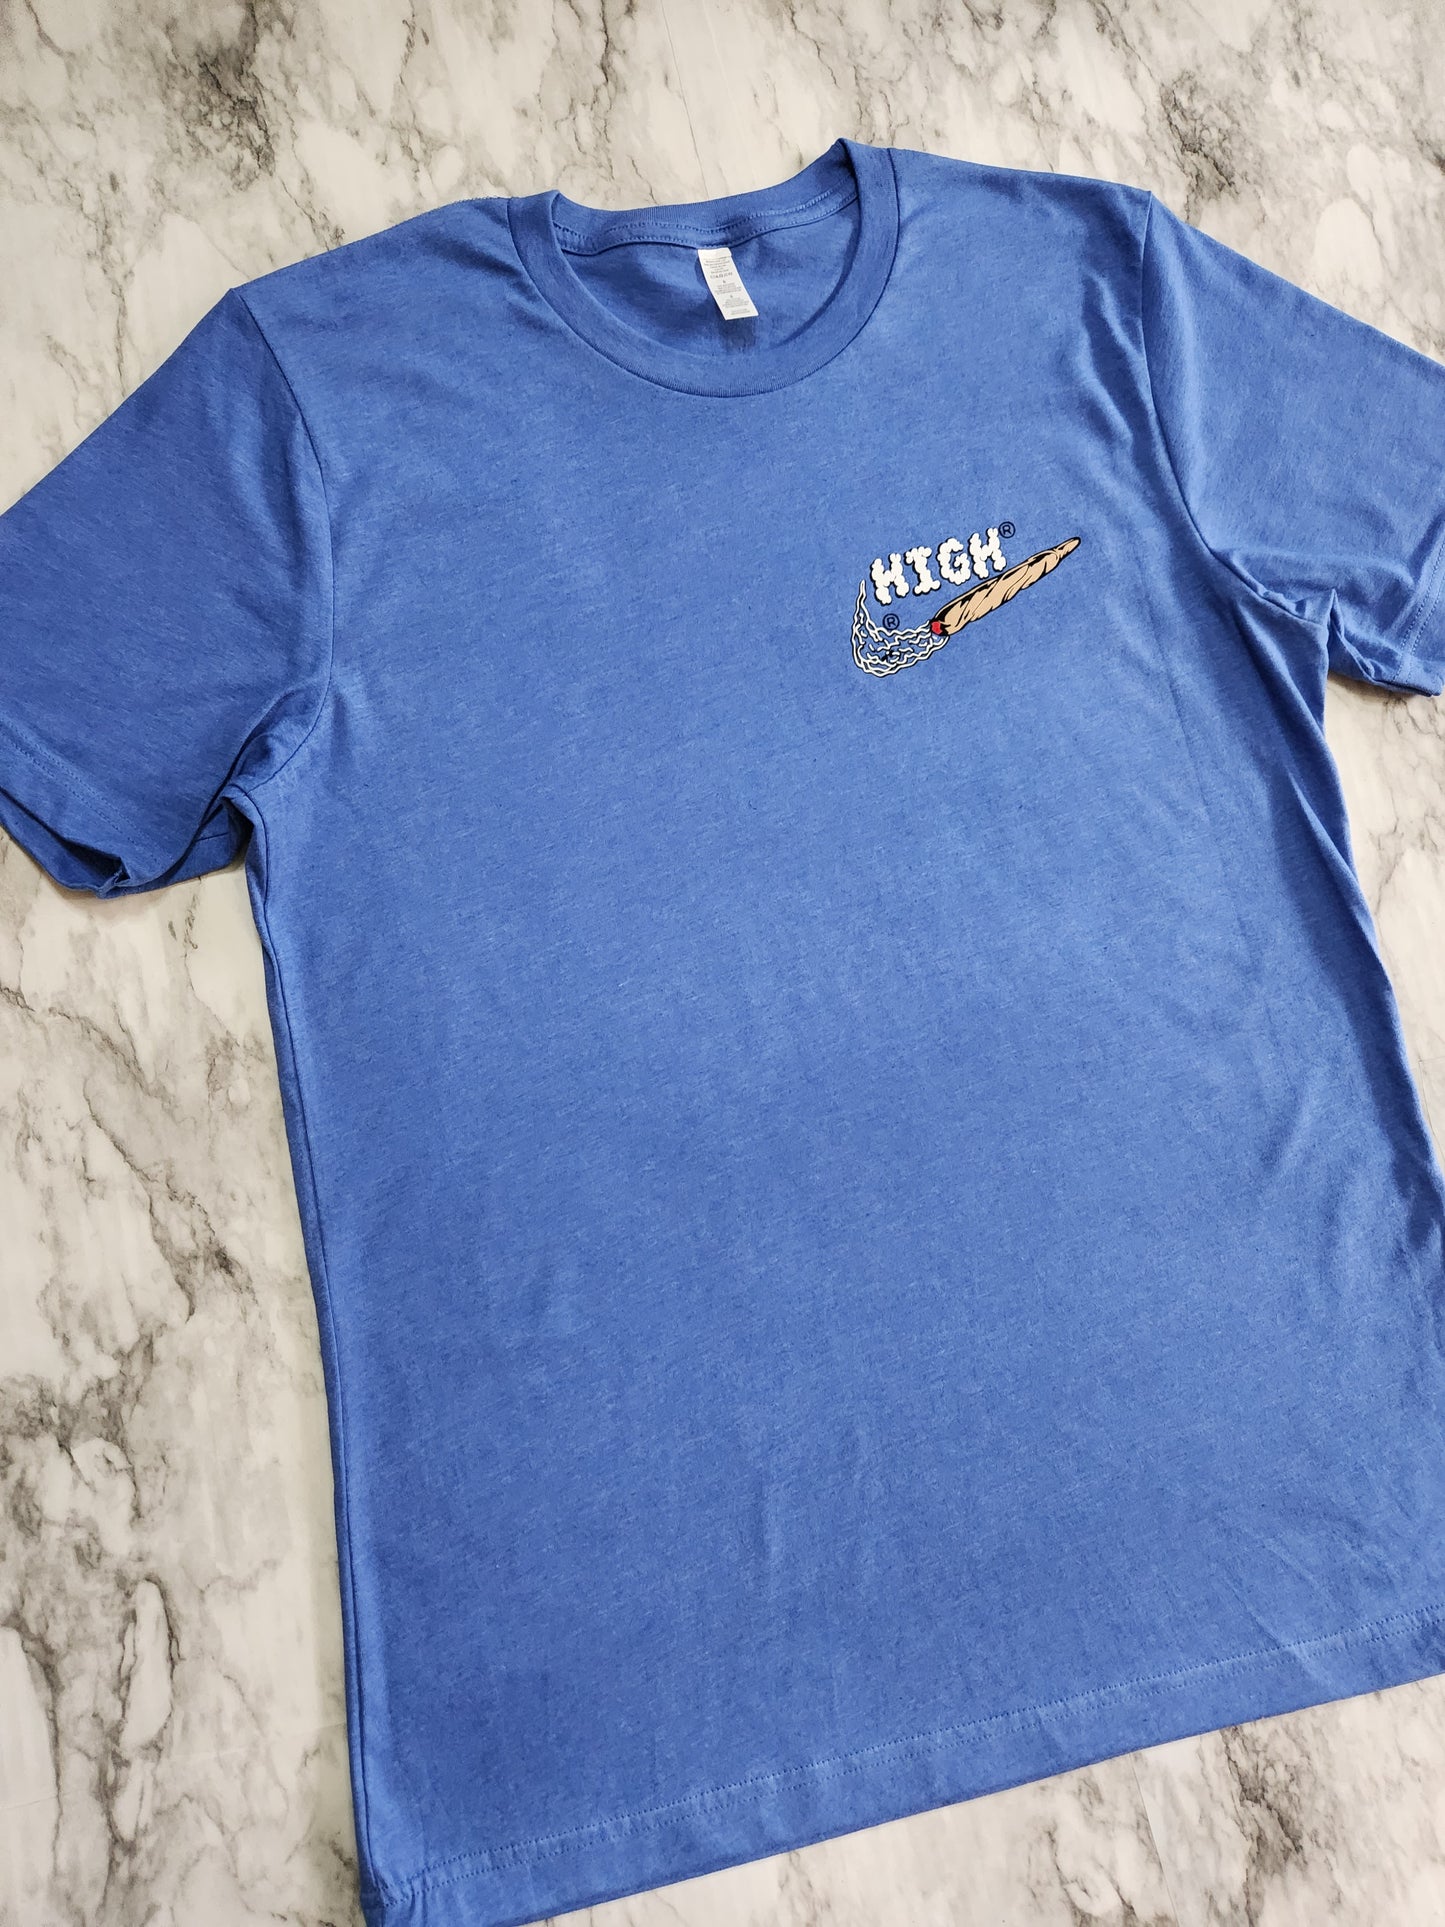 HIGH T-Shirt (Blue)